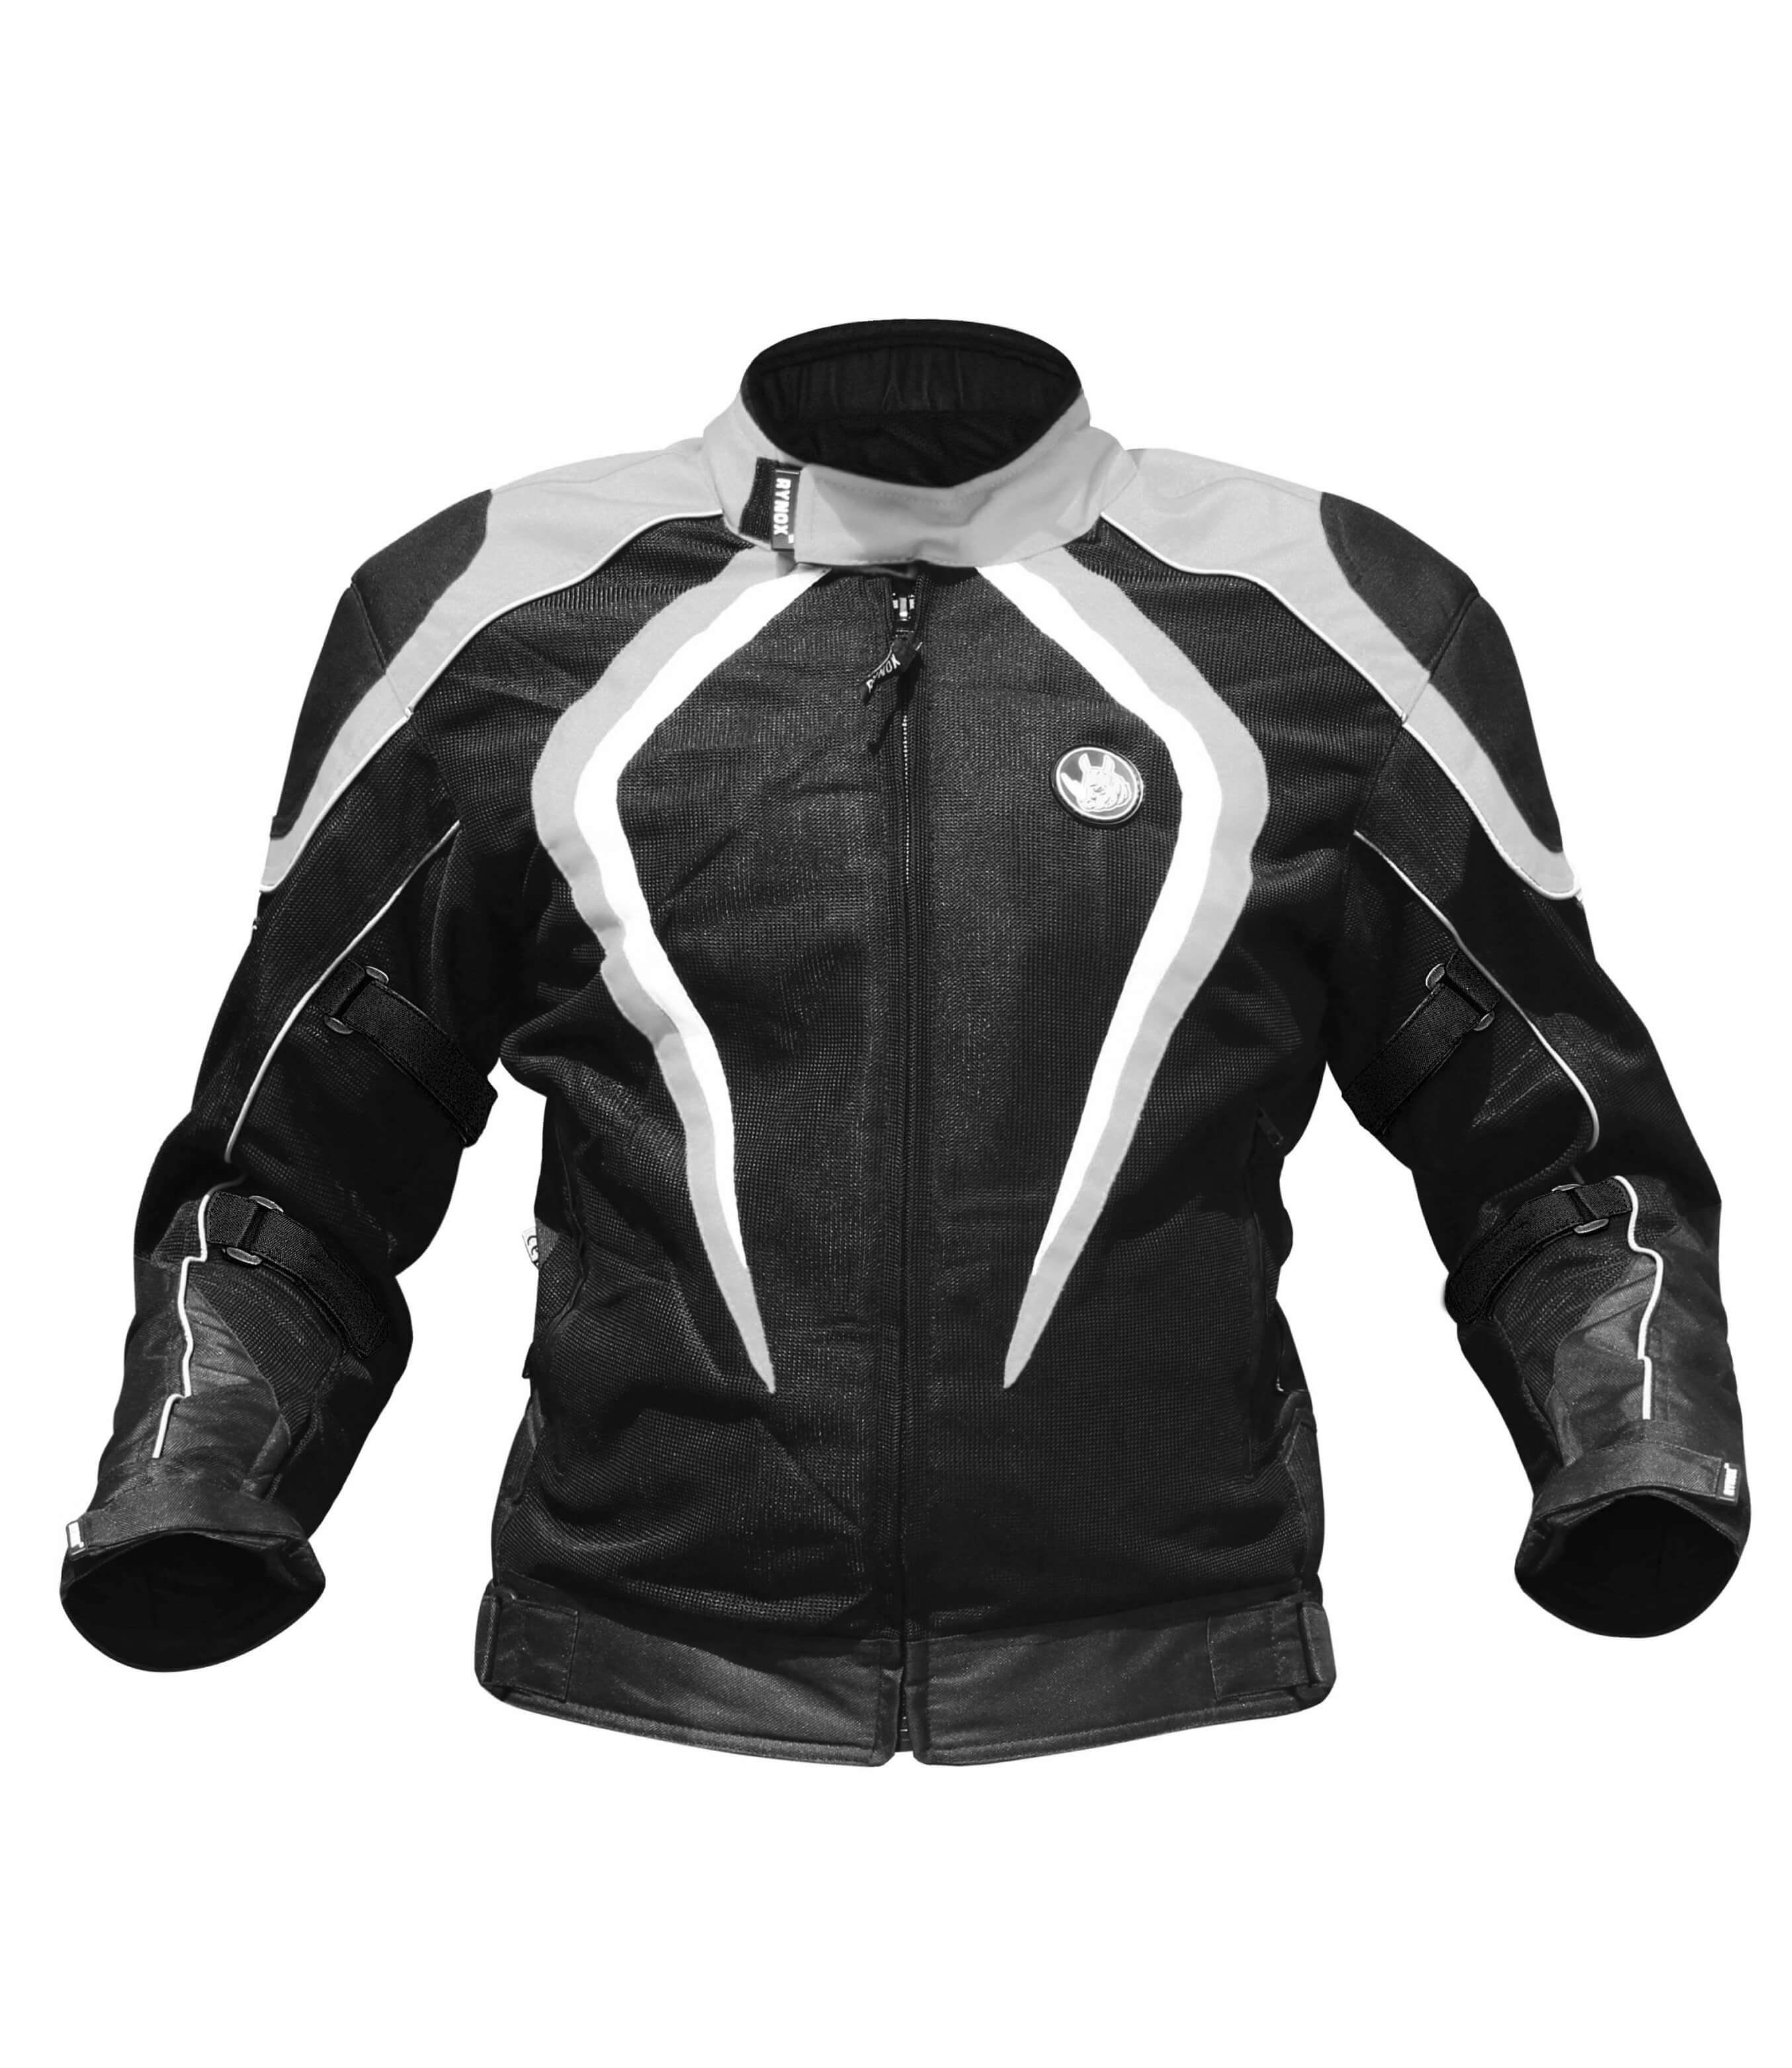 Rynox Tornado Pro V2 Black Grey Riding Jacket | Custom Elements